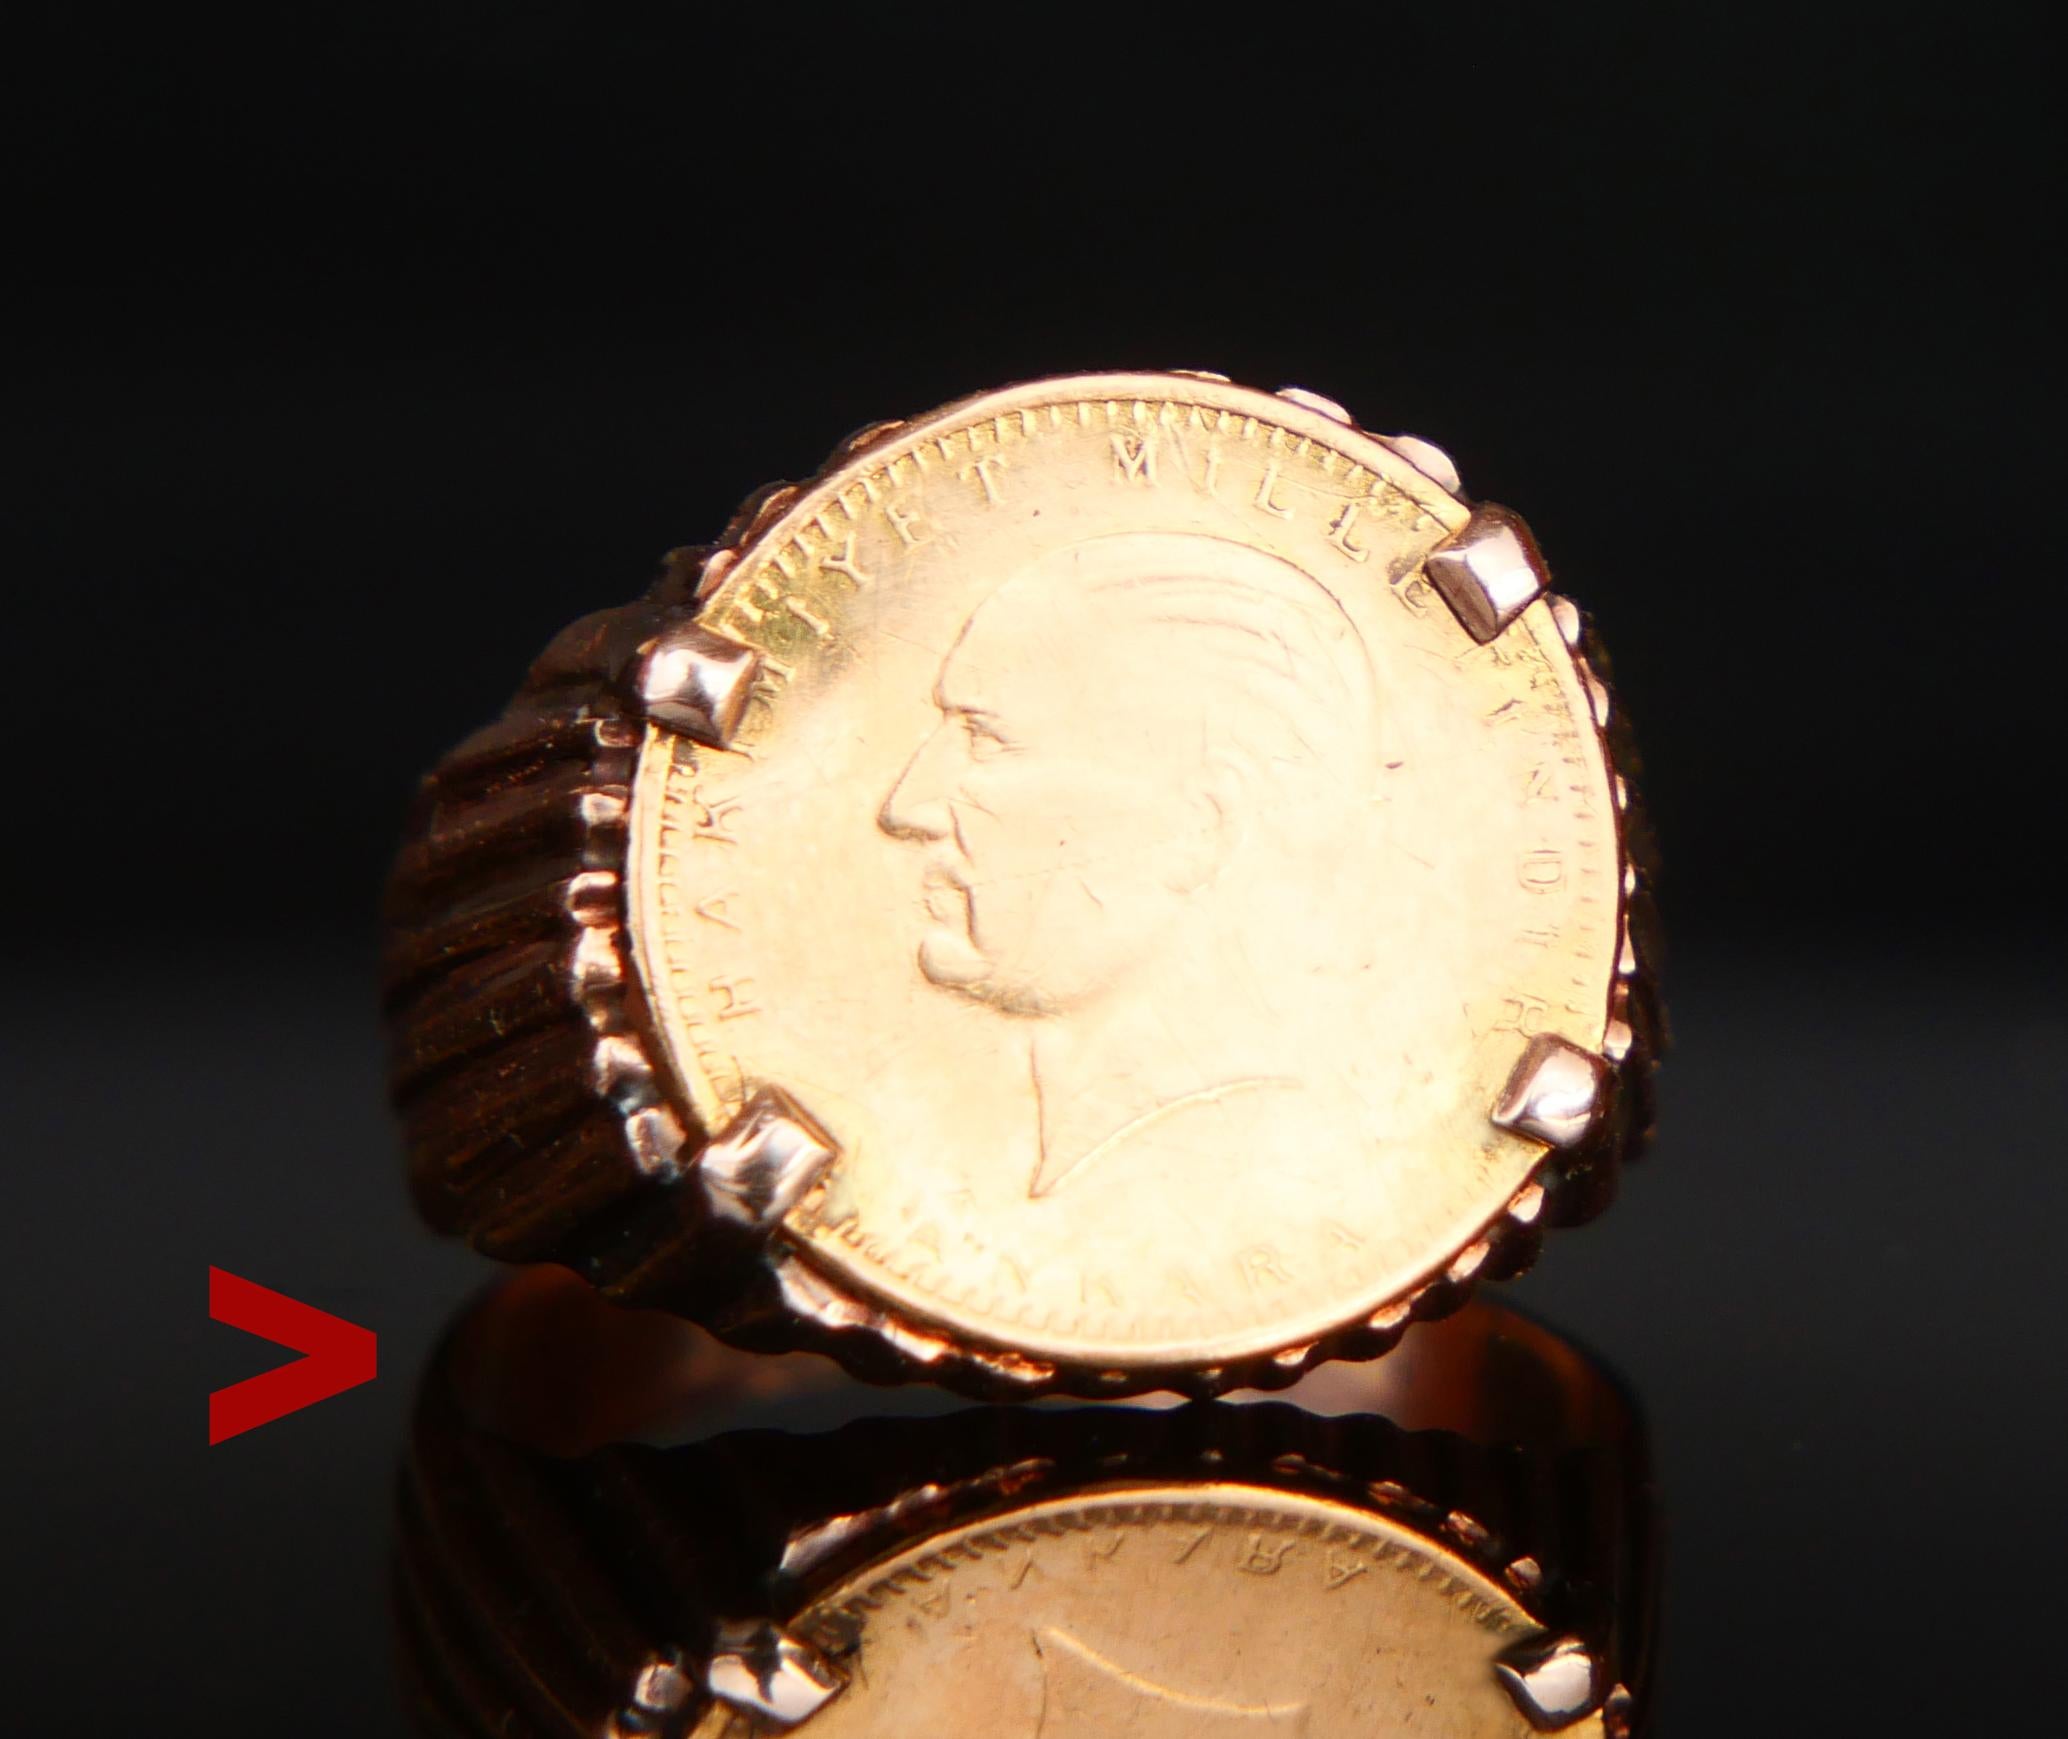 Une bague avec une pièce de monnaie turque.

Bracelet en or rose massif 14 carats orné d'une pièce turque authentique de 25 Kurush en or jaune 22 carats de Ø14 mm, frappée en 1969, sertie d'un chaton.

La face de la pièce porte l'image de profil de